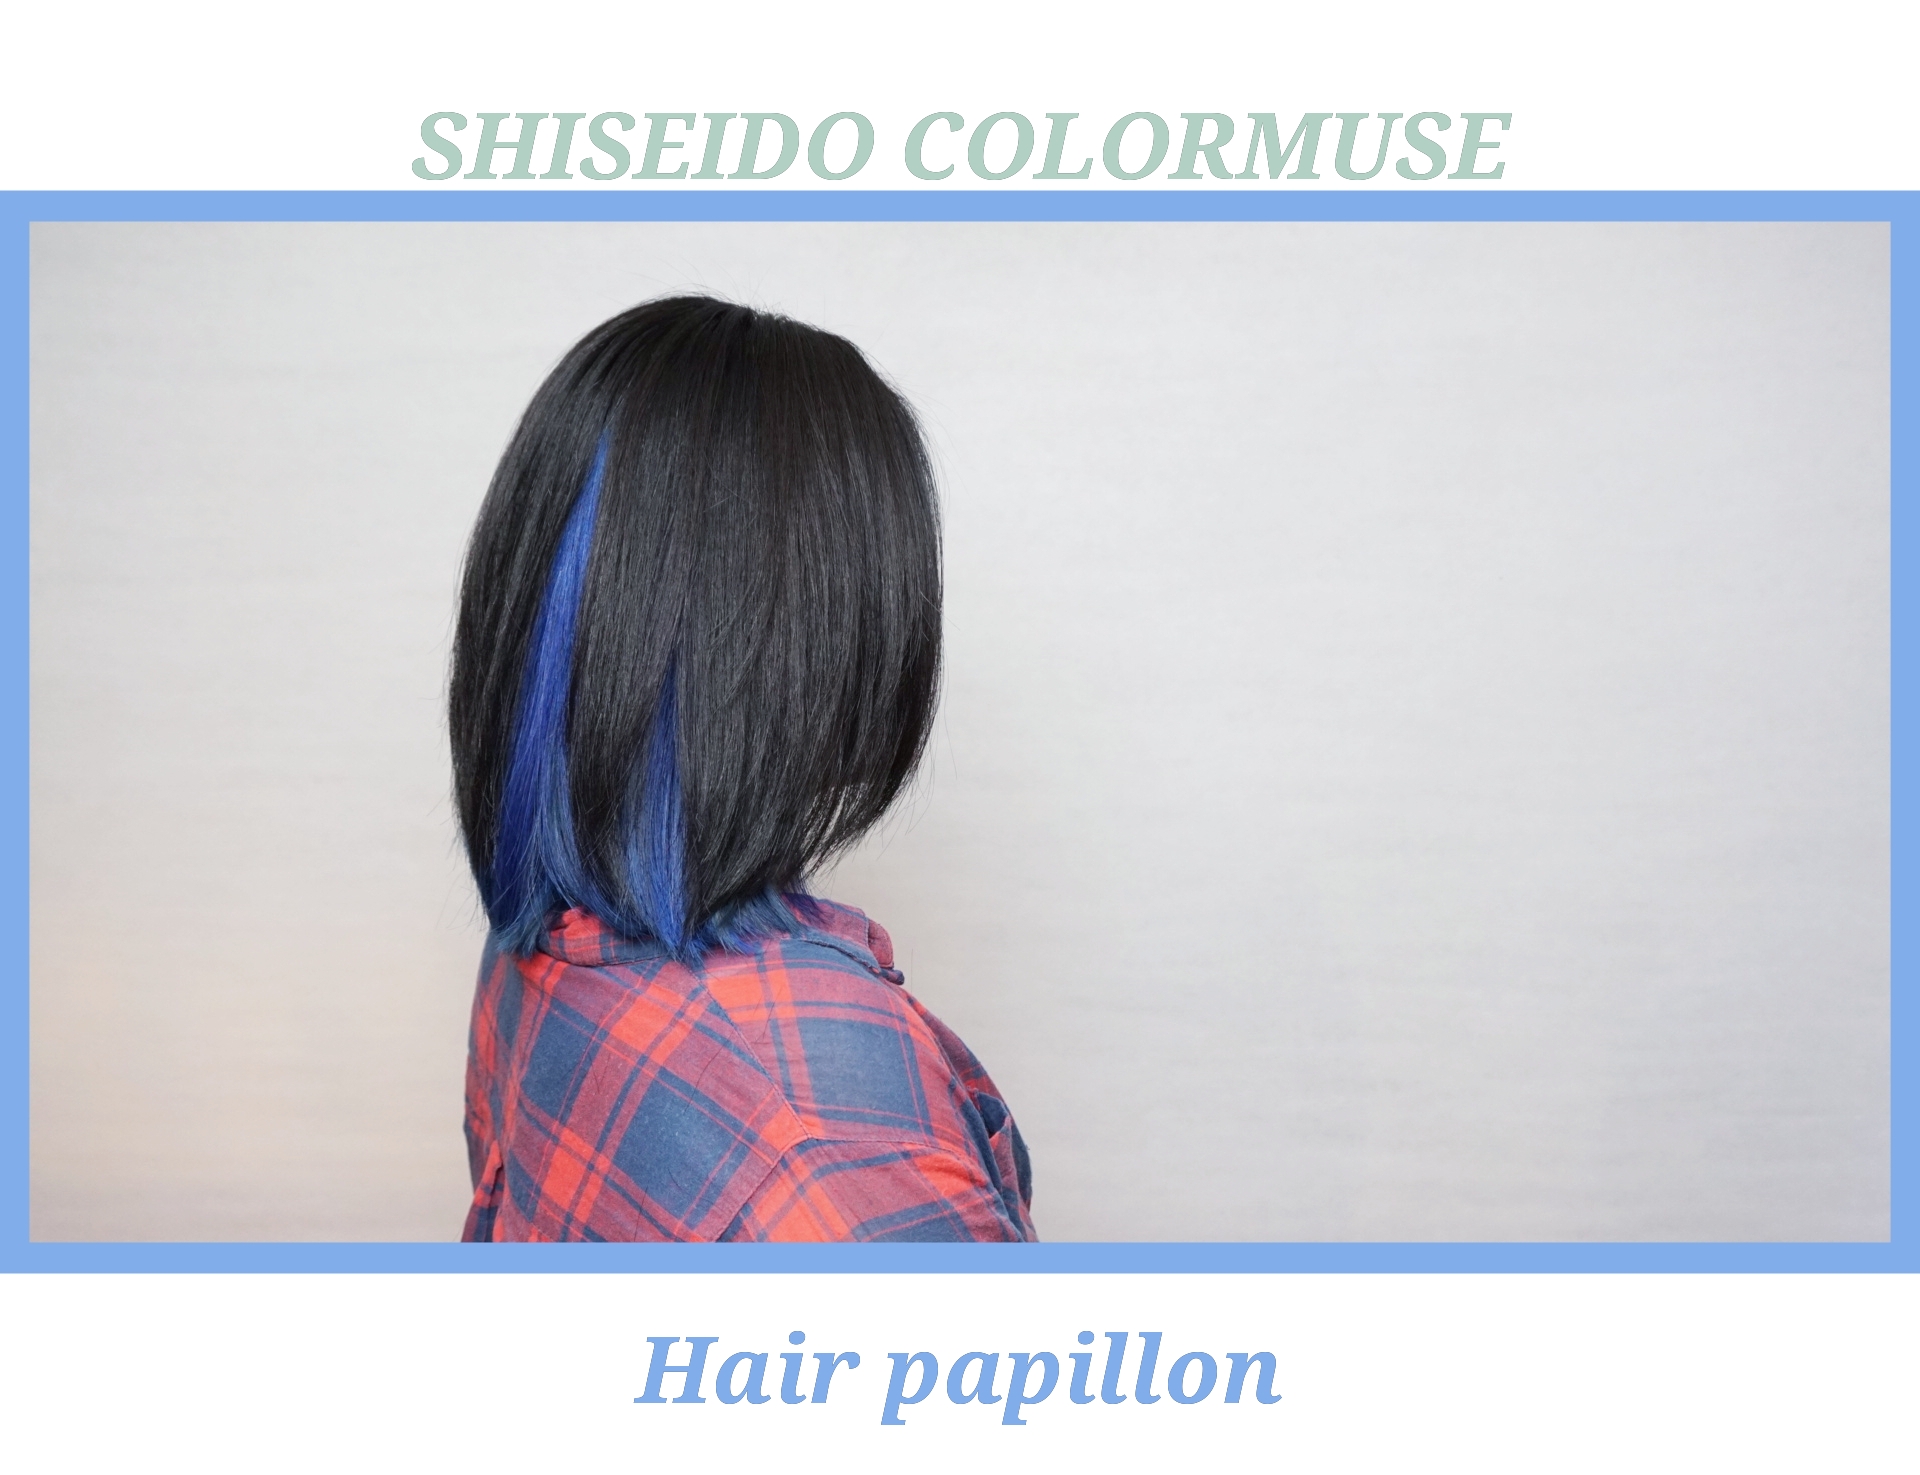 髮型作品參考:shiseido colormuse